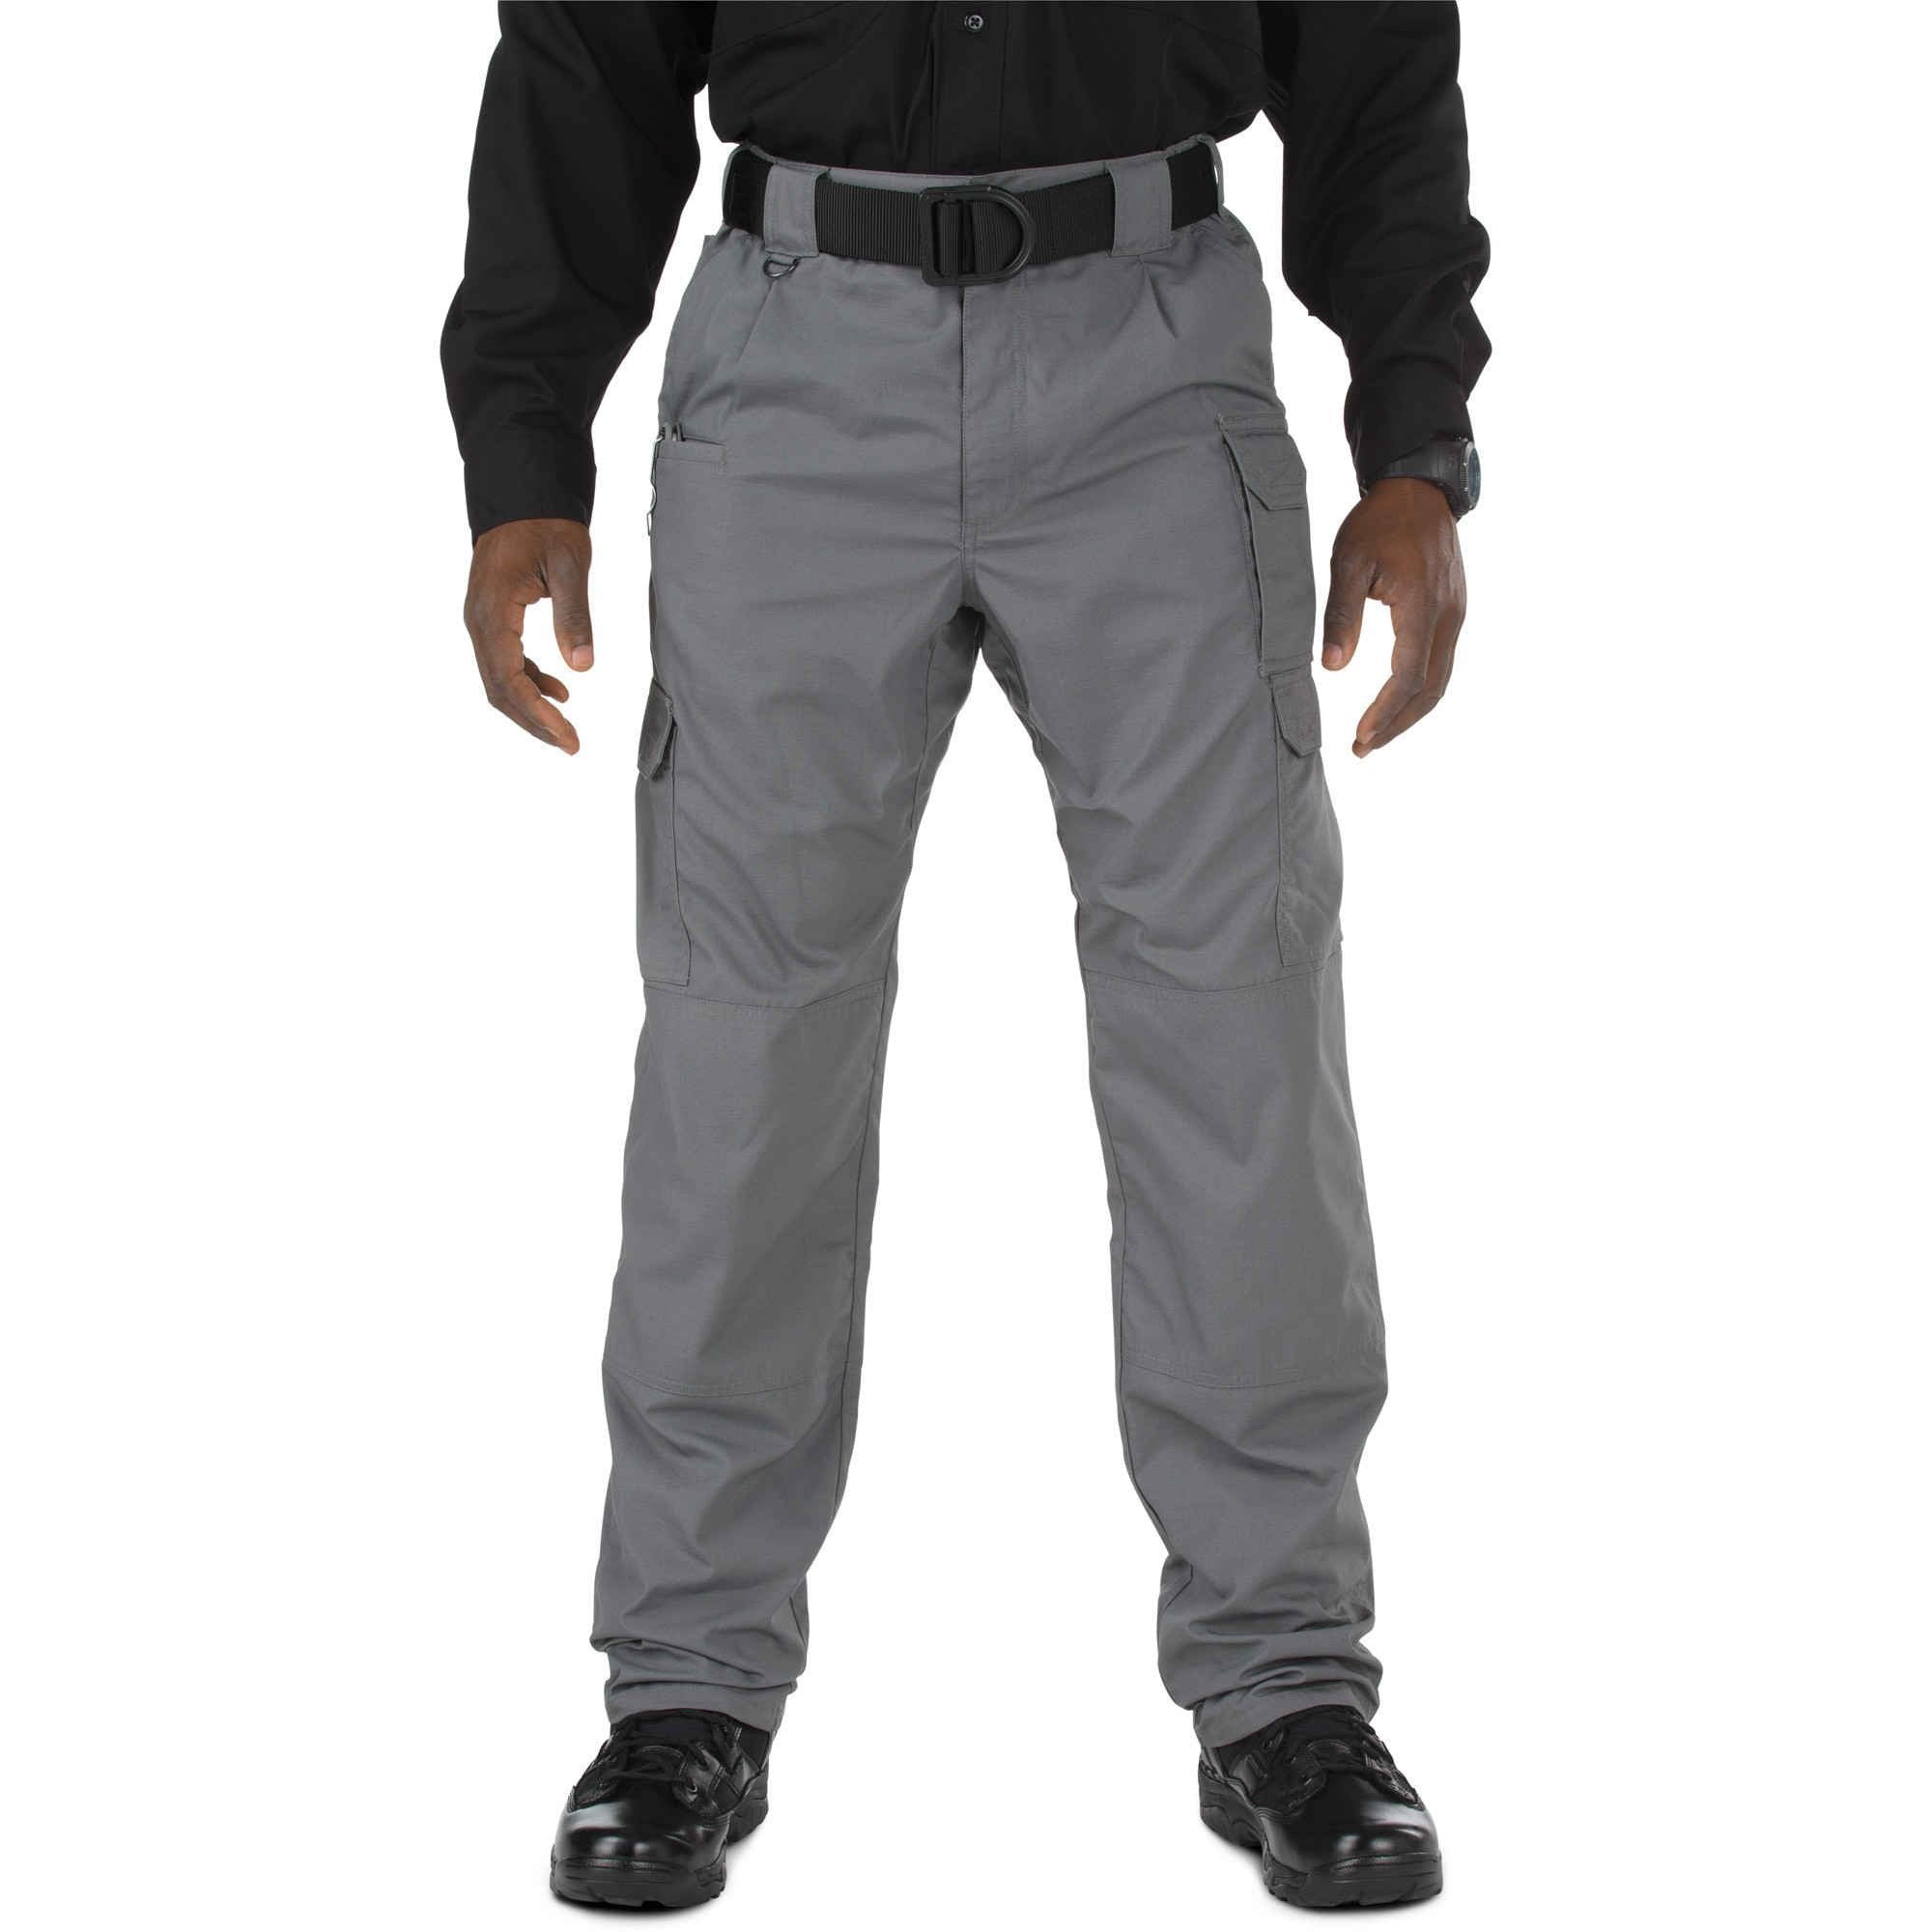 5.11 Tactical Taclite Pro Pants - Storm Pants 5.11 Tactical 28 30 Tactical Gear Supplier Tactical Distributors Australia